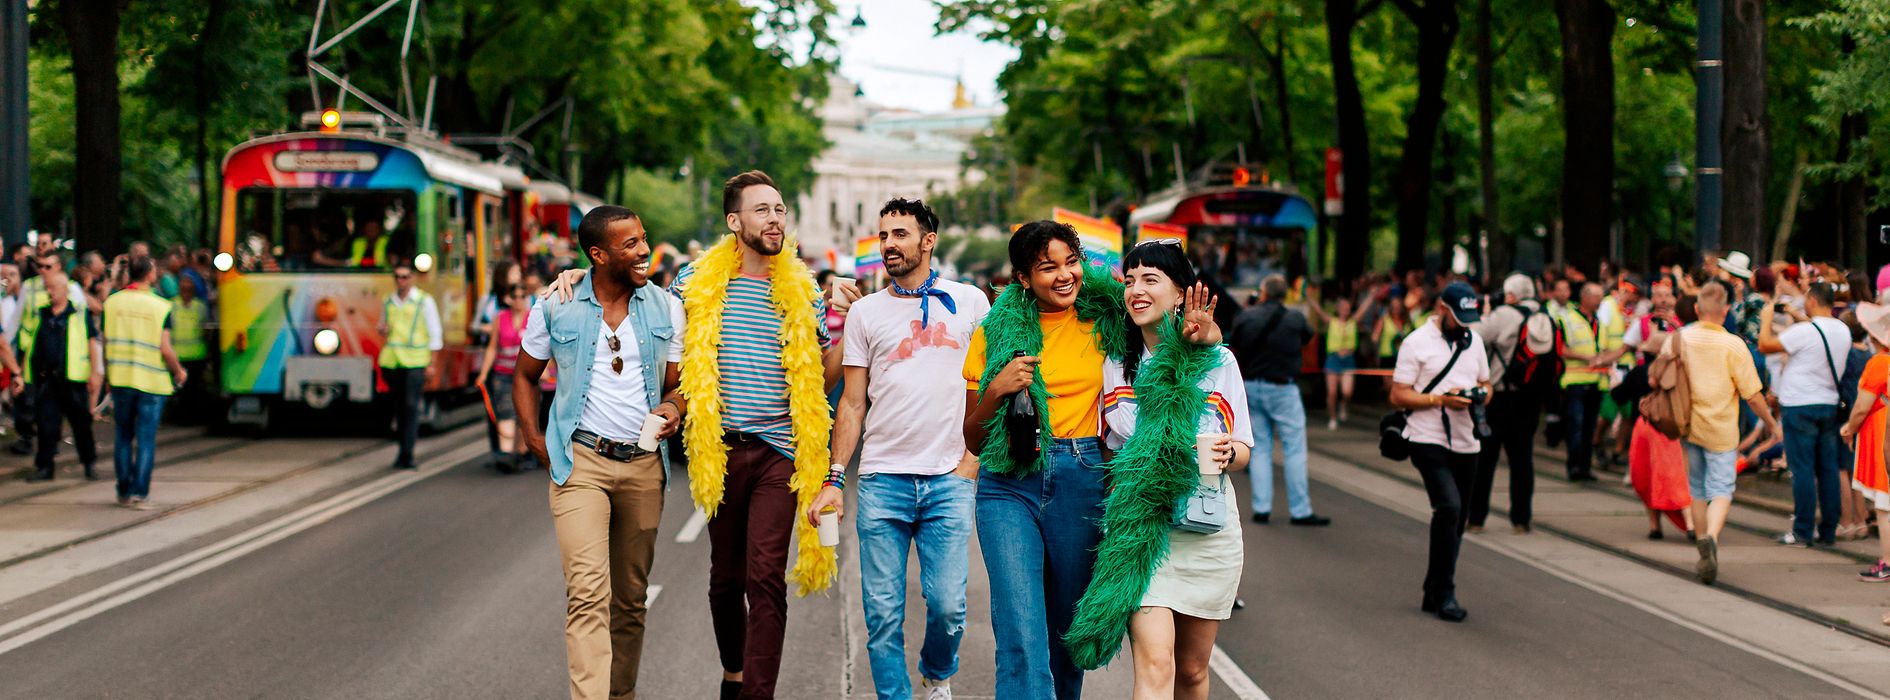 Schwule und lesbische Freunde auf der Regenbogenparade